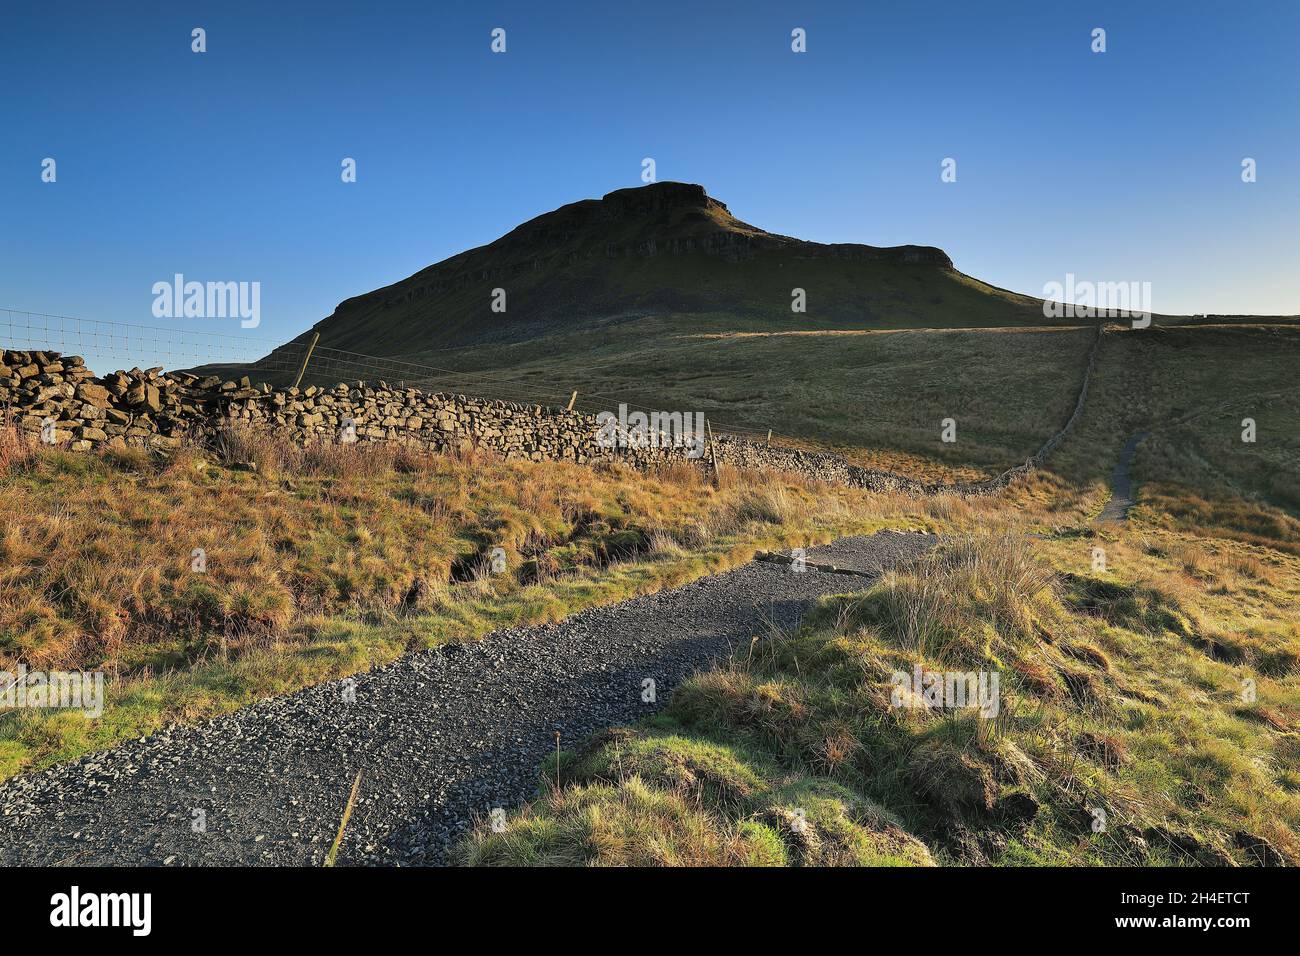 Sentiero che conduce alla cima di Penyghent, una montagna nelle valli dello Yorkshire e una delle famose 'tre cime'. Foto Stock